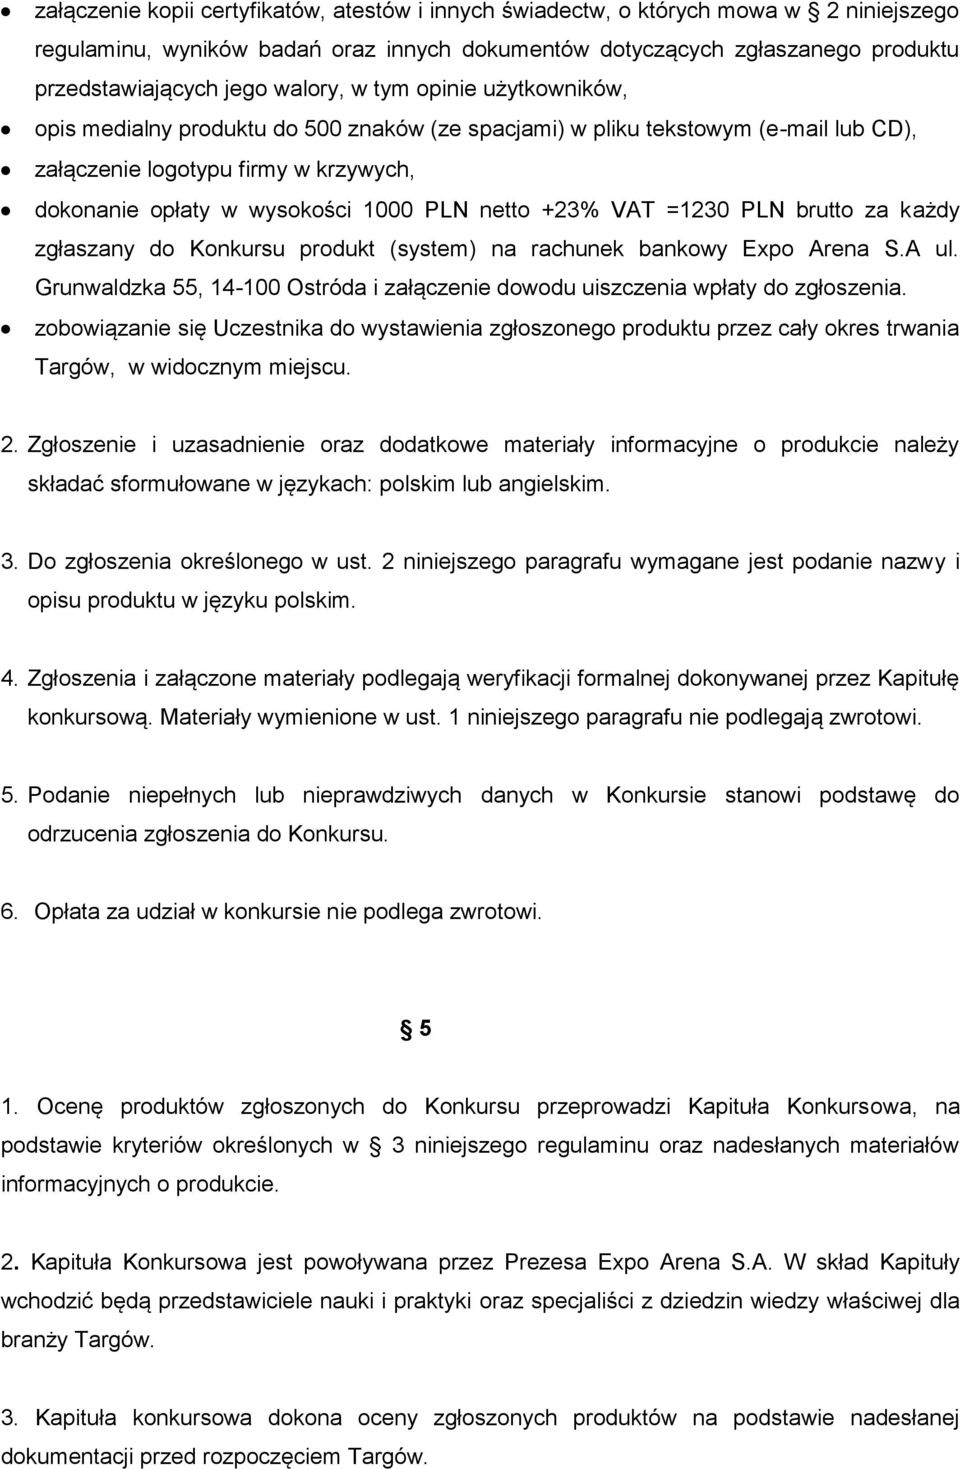 netto +23% VAT =1230 PLN brutto za każdy zgłaszany do Konkursu produkt (system) na rachunek bankowy Expo Arena S.A ul.